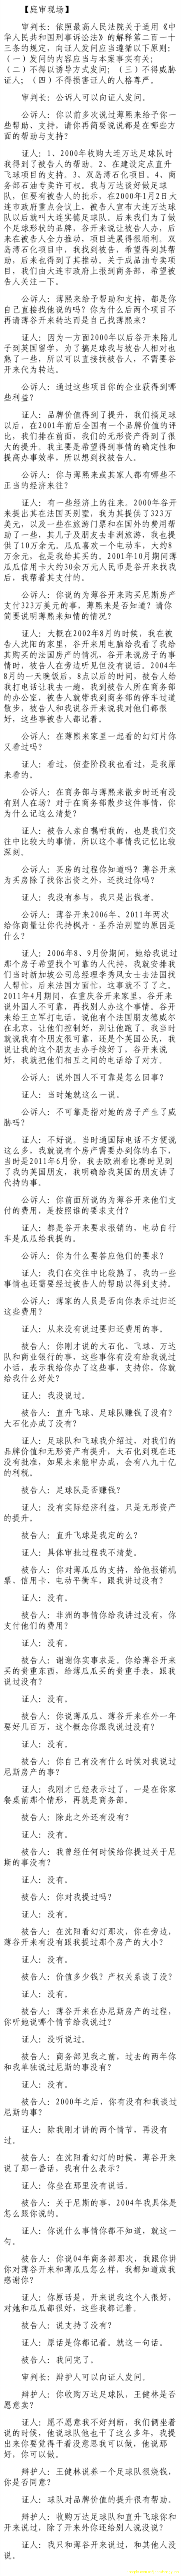 济南市中级法院官方微博公布的8月22日庭审现场记录（7）